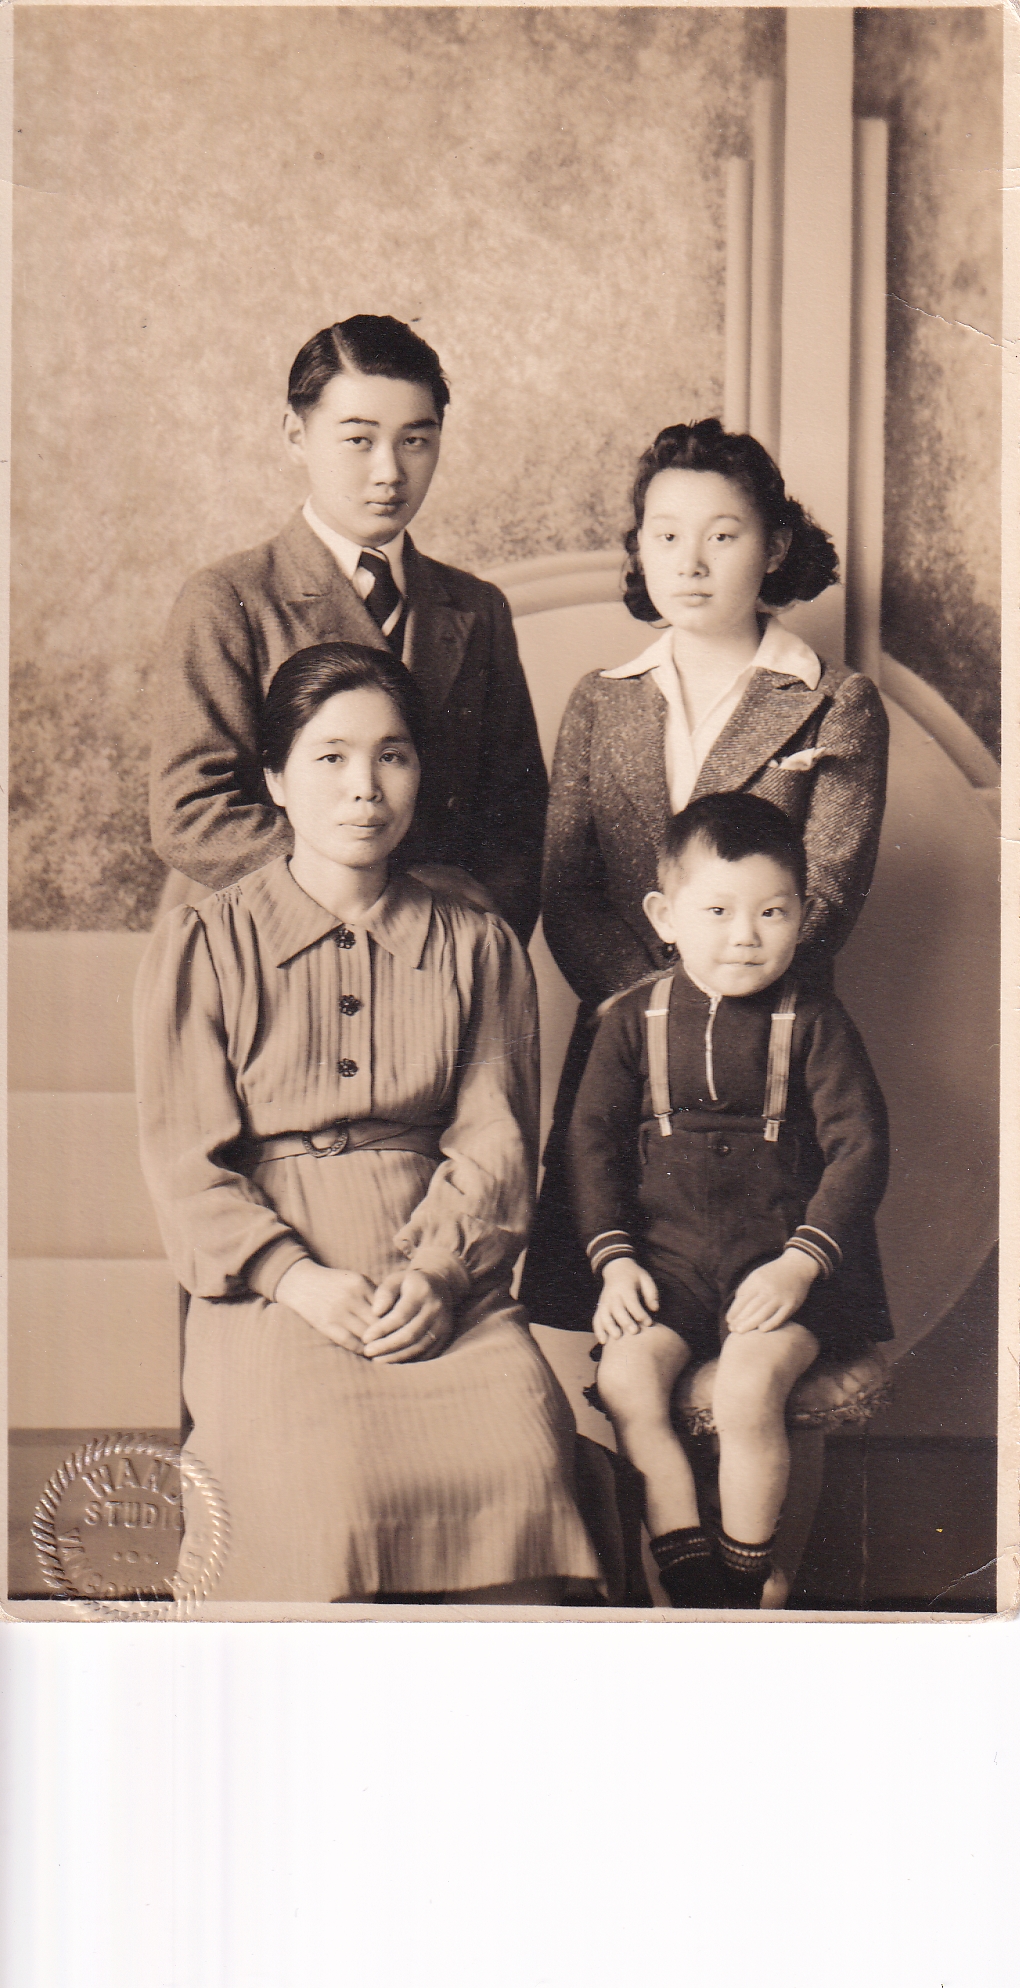  Ken Teshima en tant que jeune garçon avec sa mère et ses deux cousins